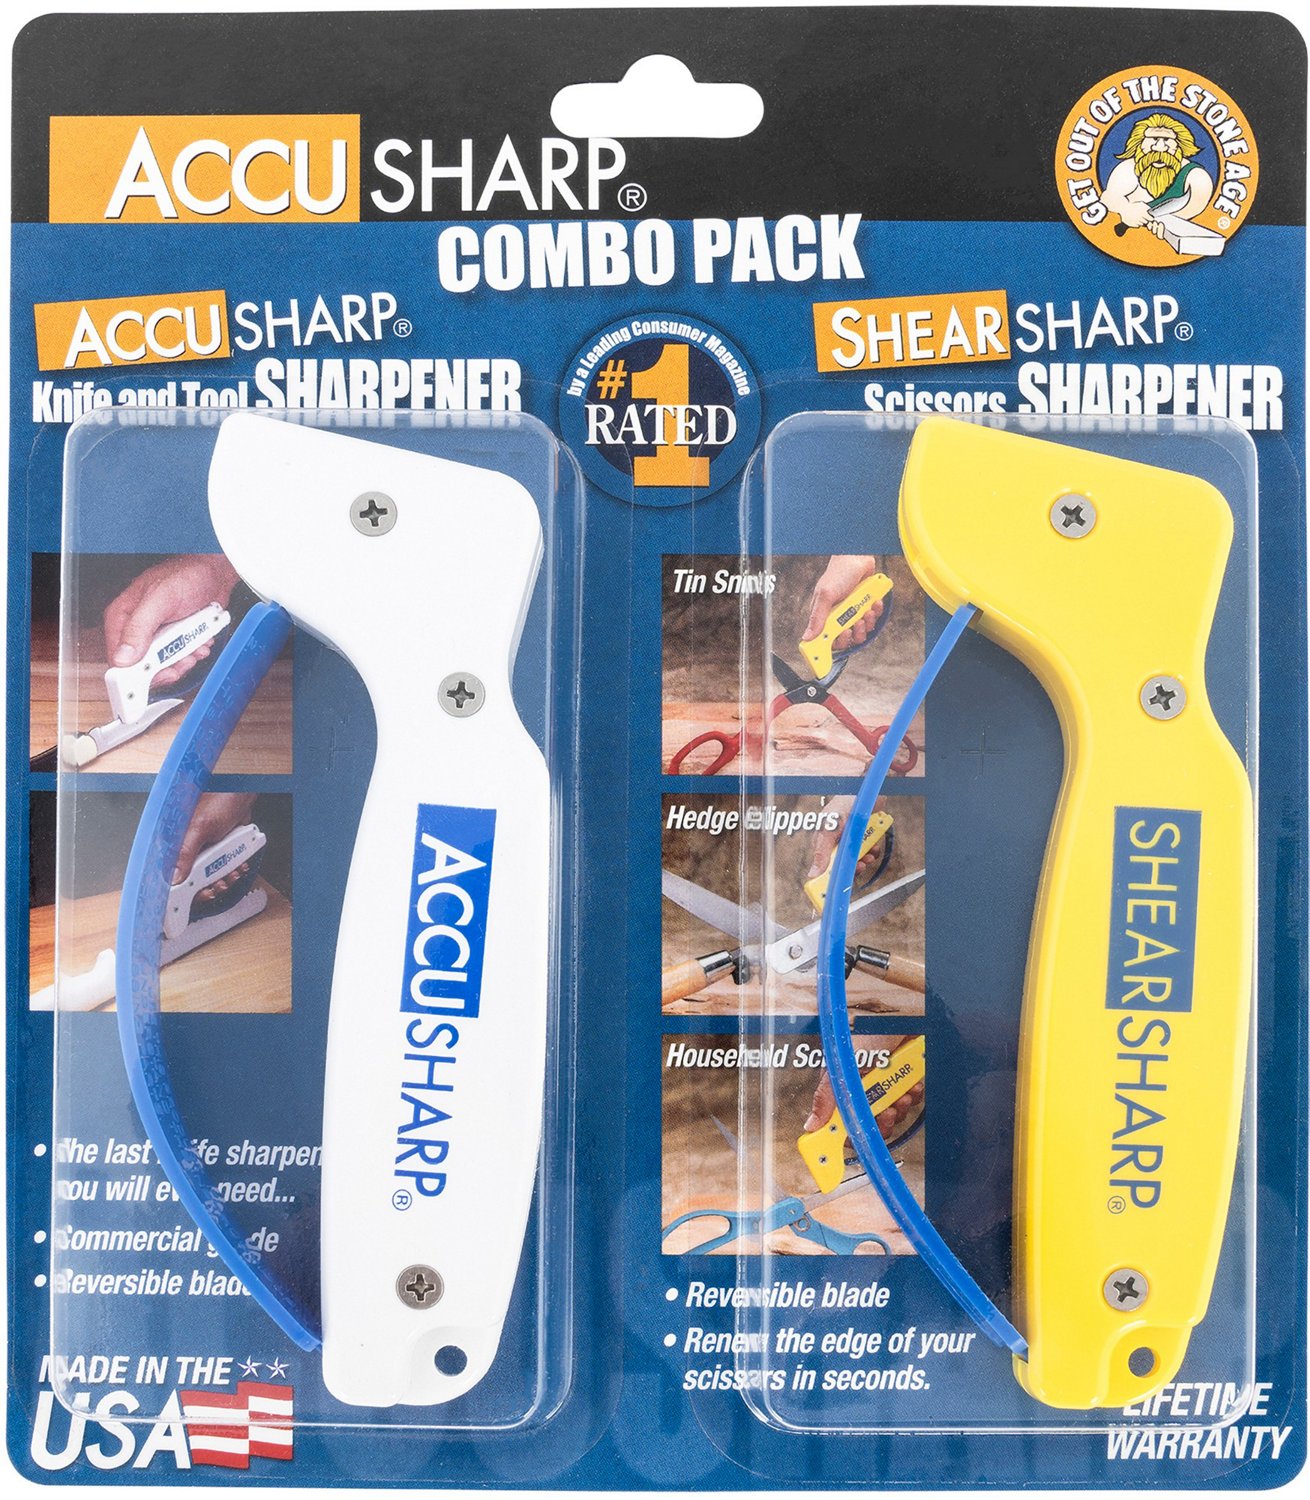 AccuSharp Knife & Tool Sharpener and ShearSharp Scissors Sharpener